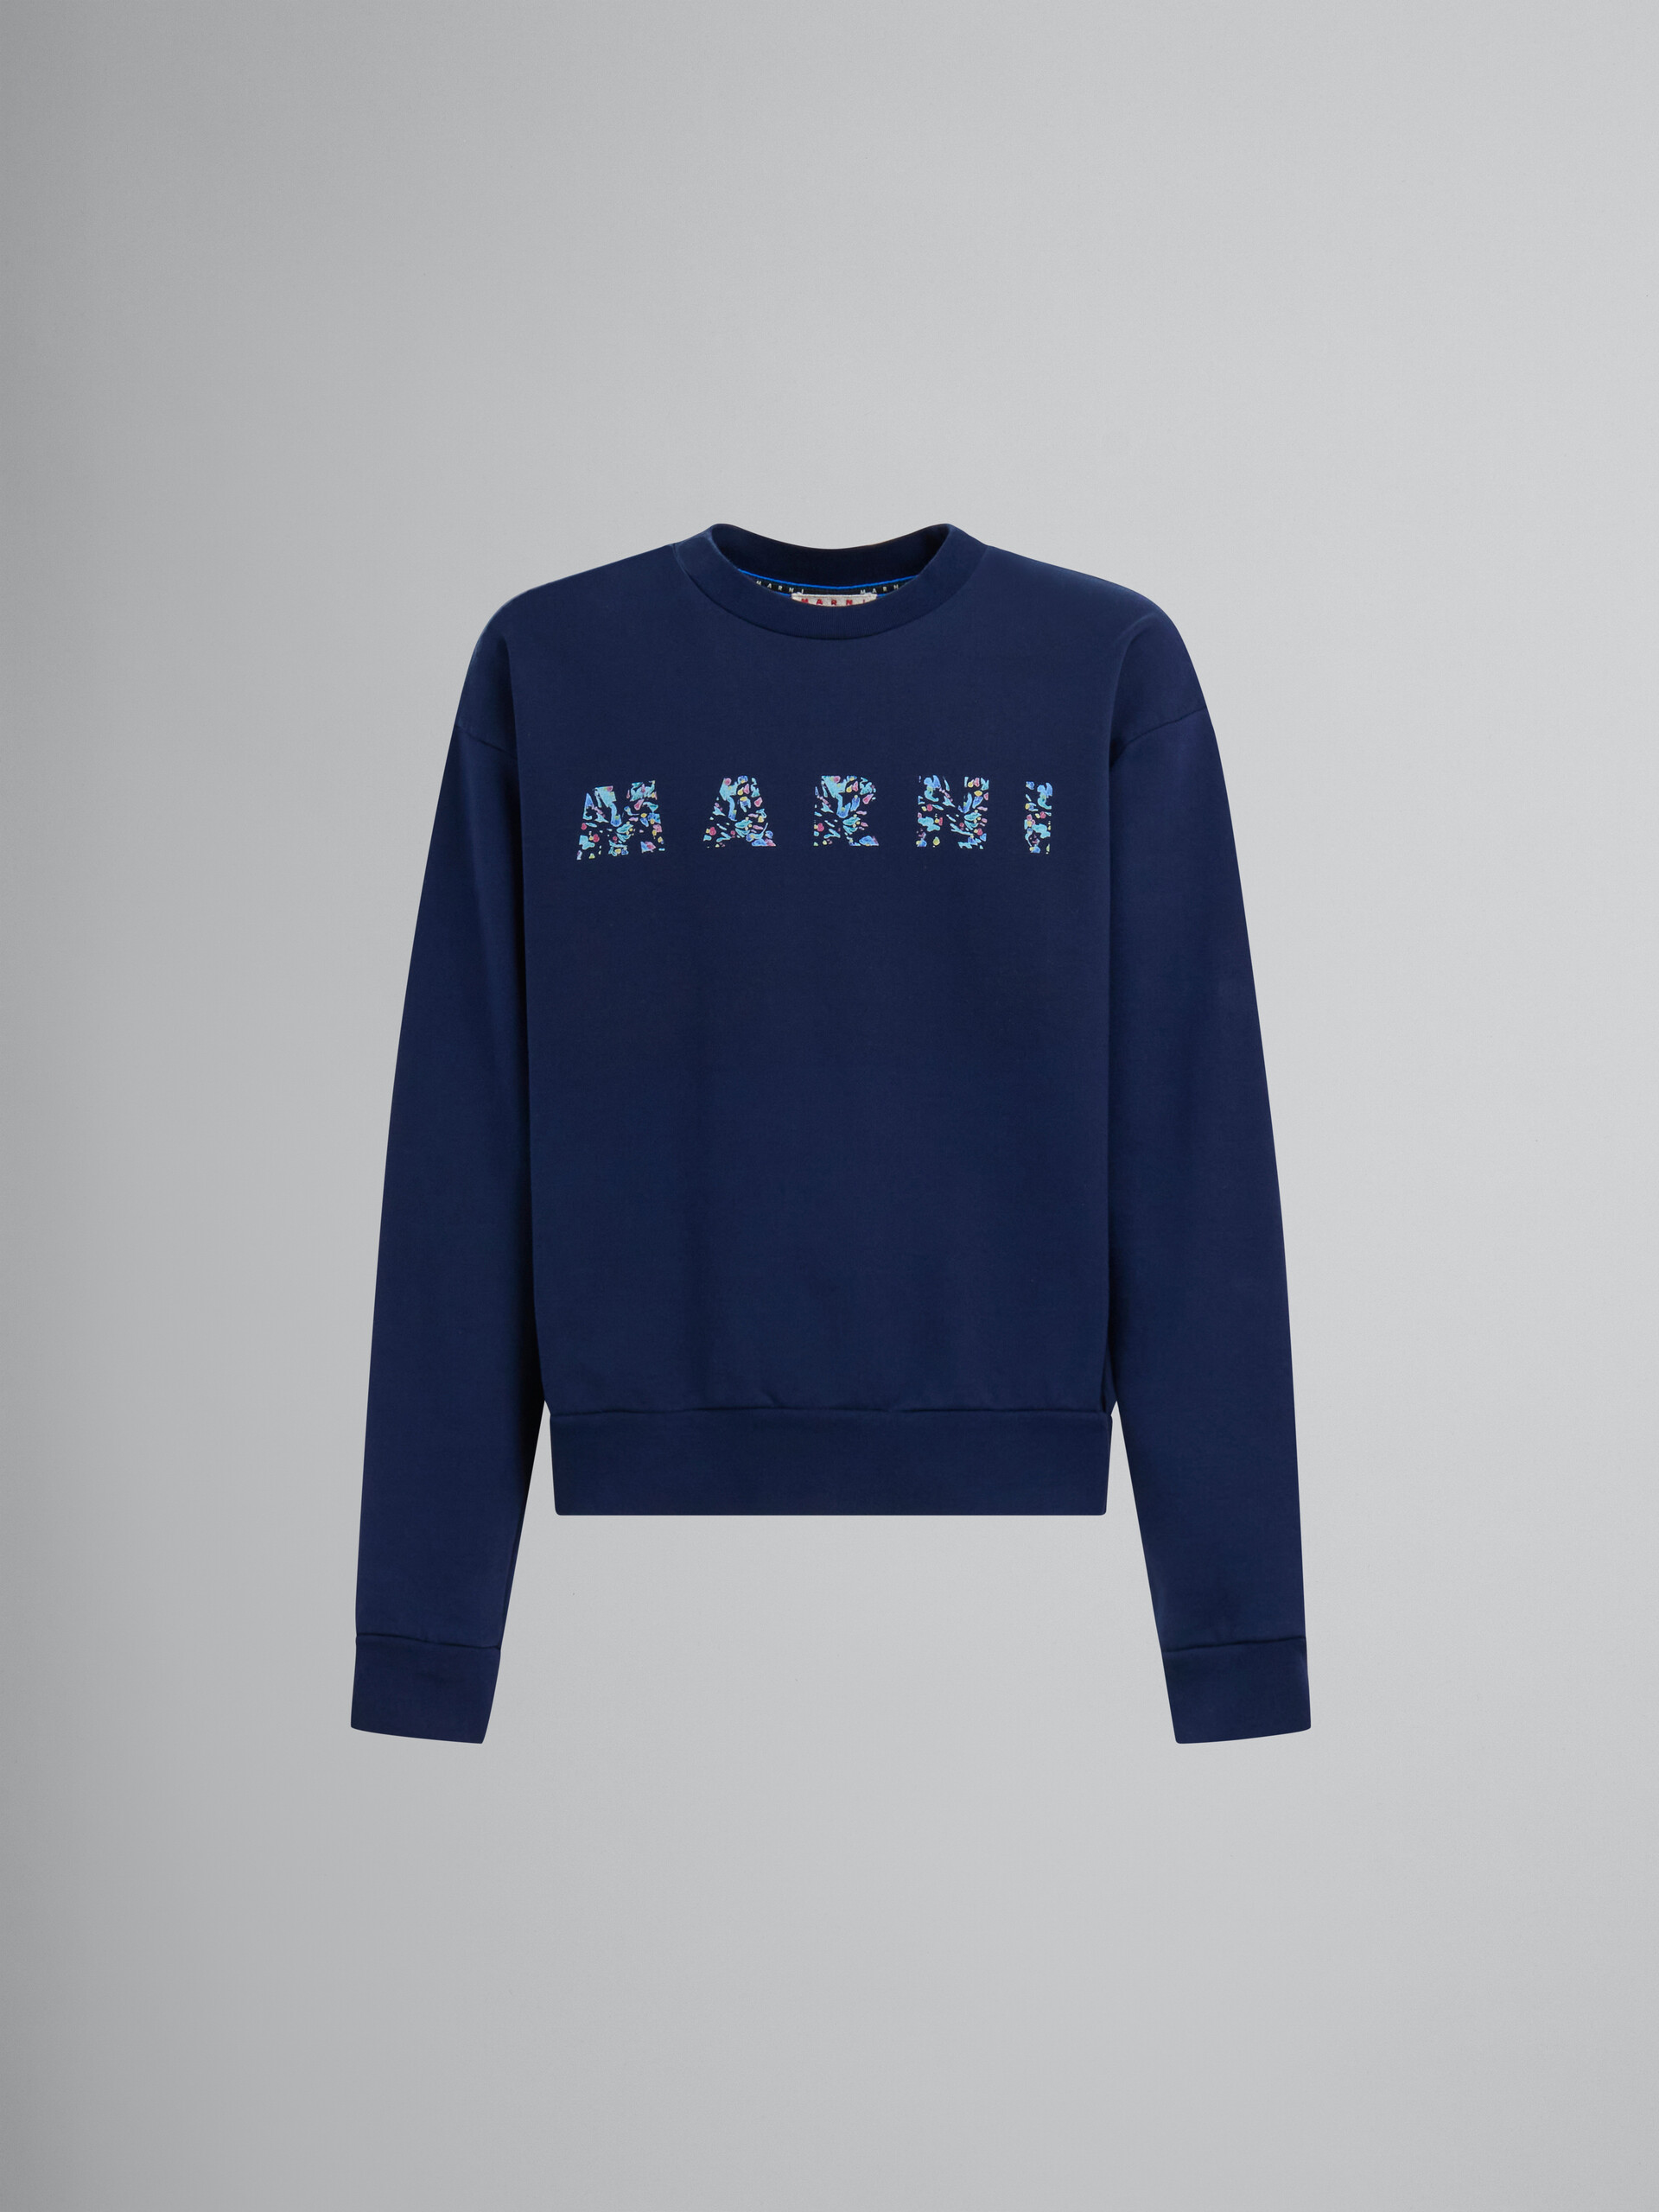 Blaues Sweatshirt aus Bio-Baumwolle mit gemustertem Marni-Print - Strickwaren - Image 1